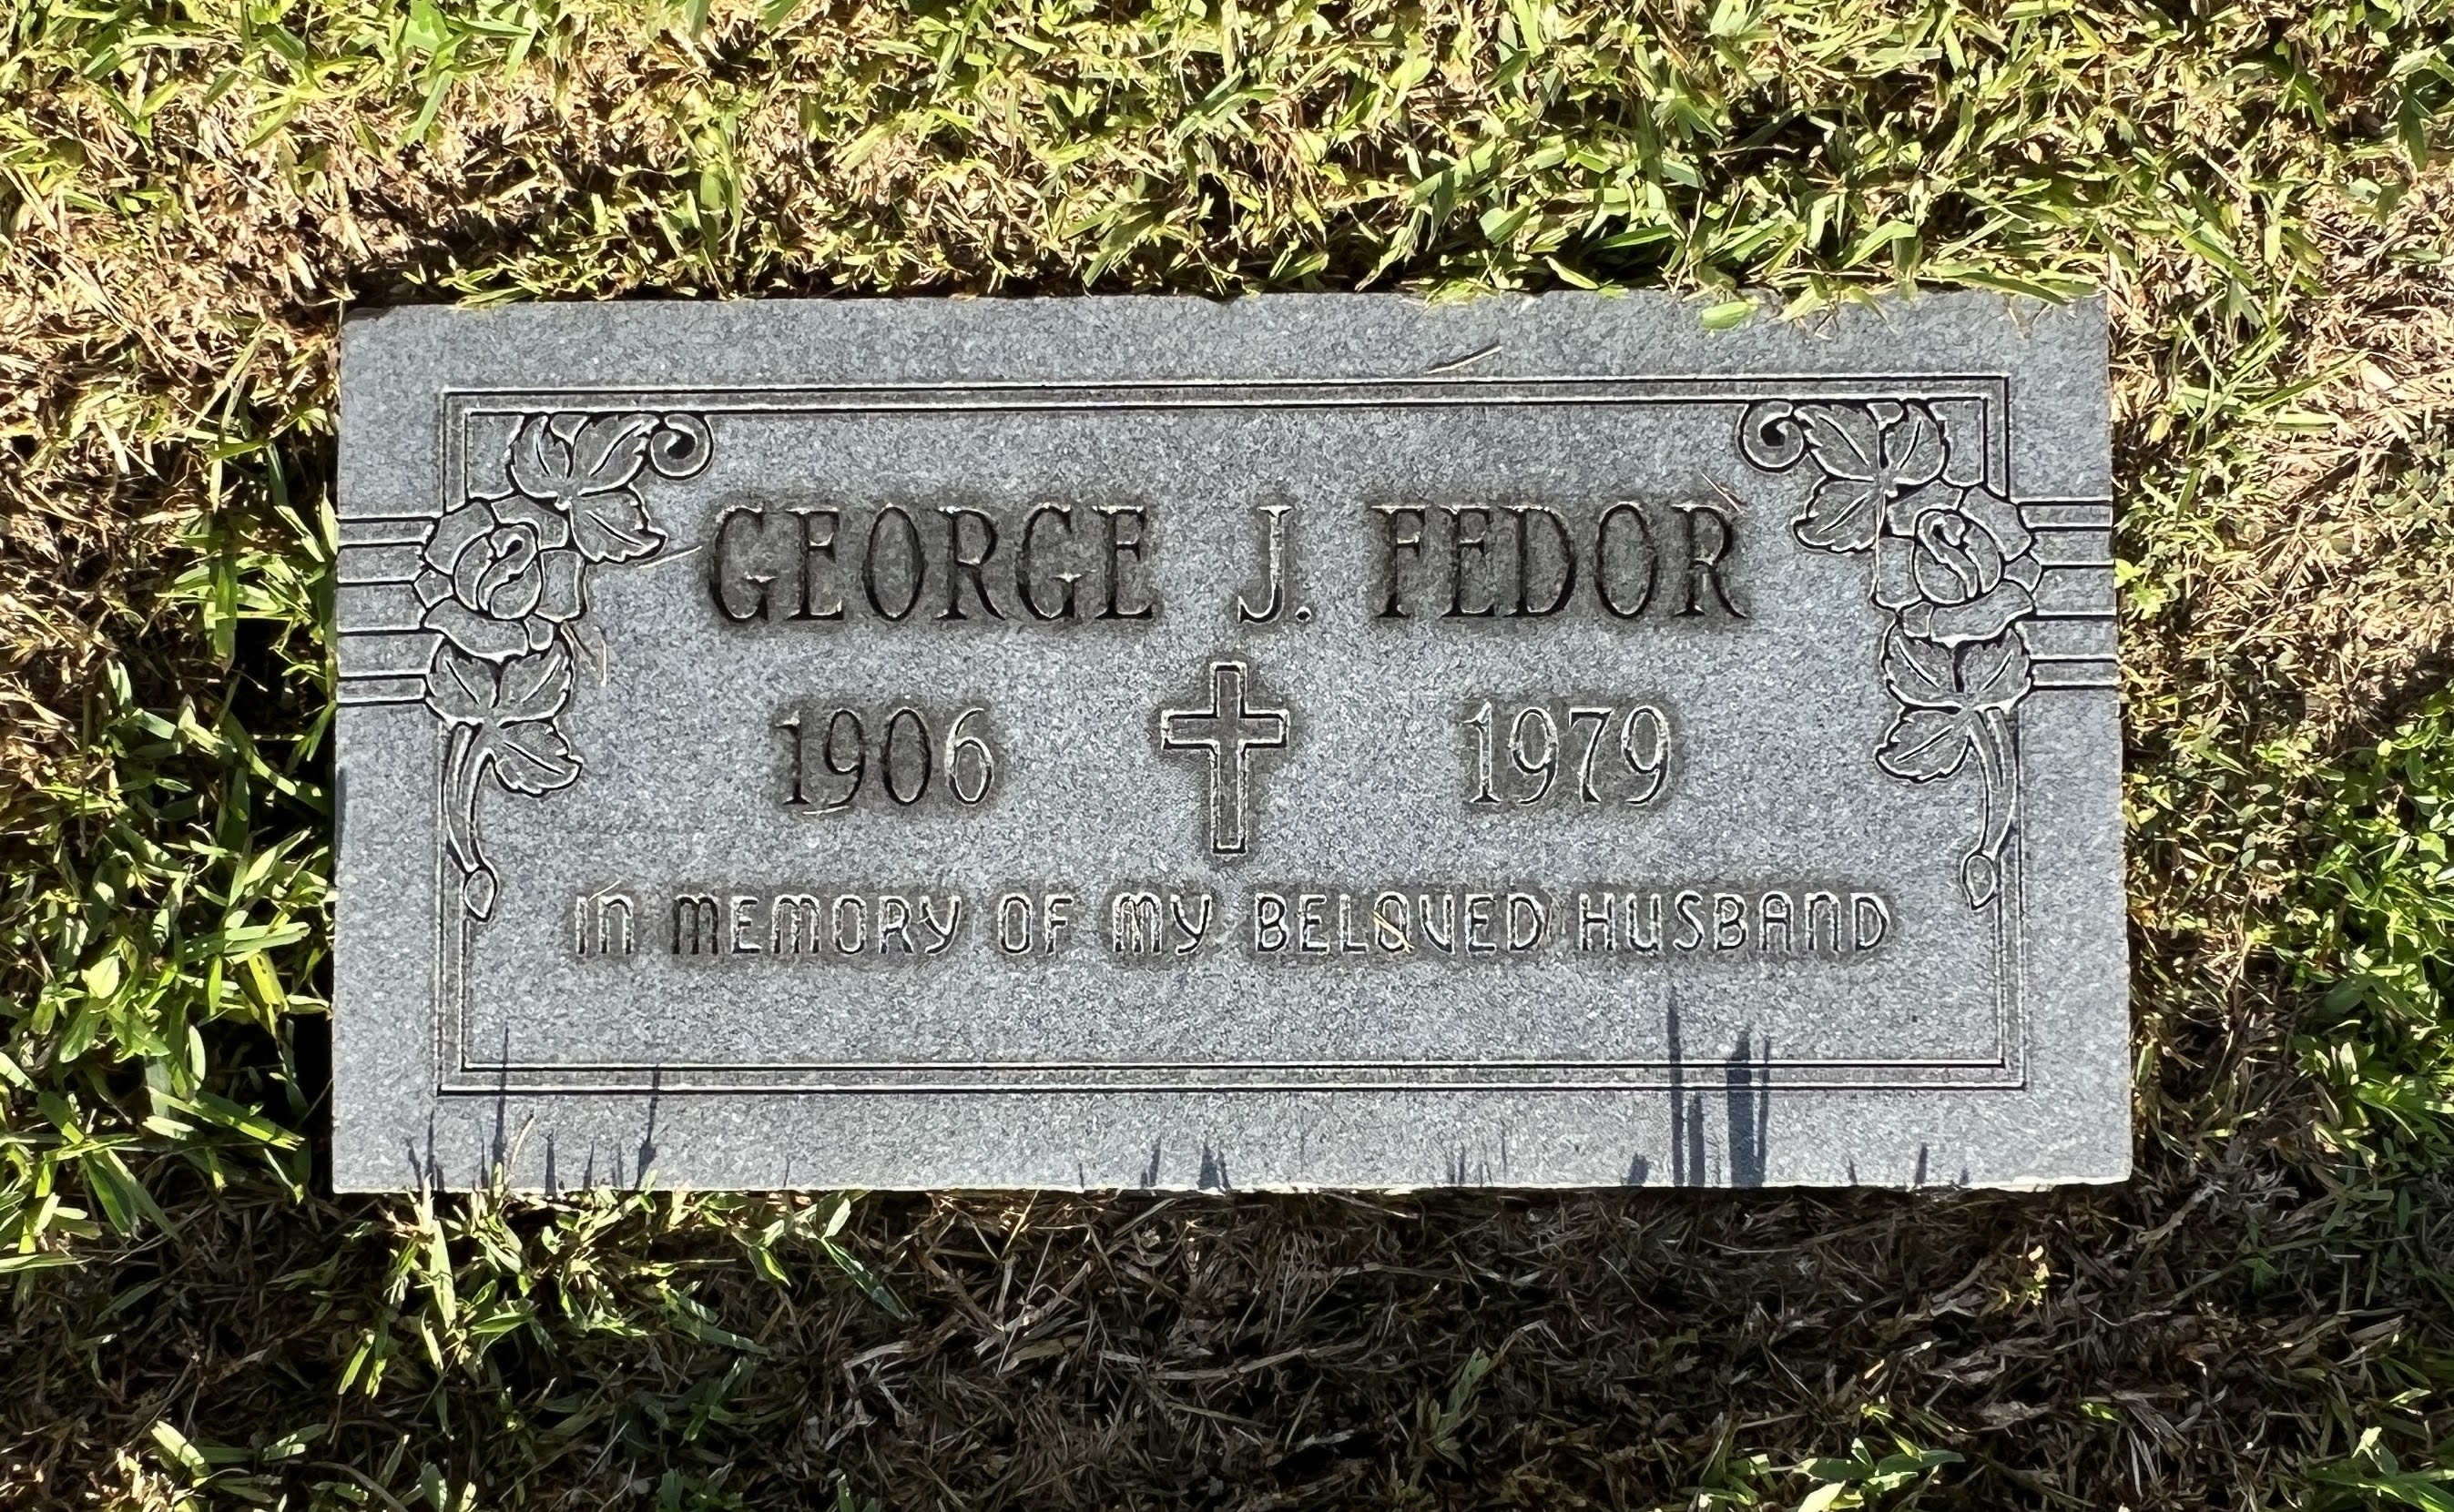 George J Fedor